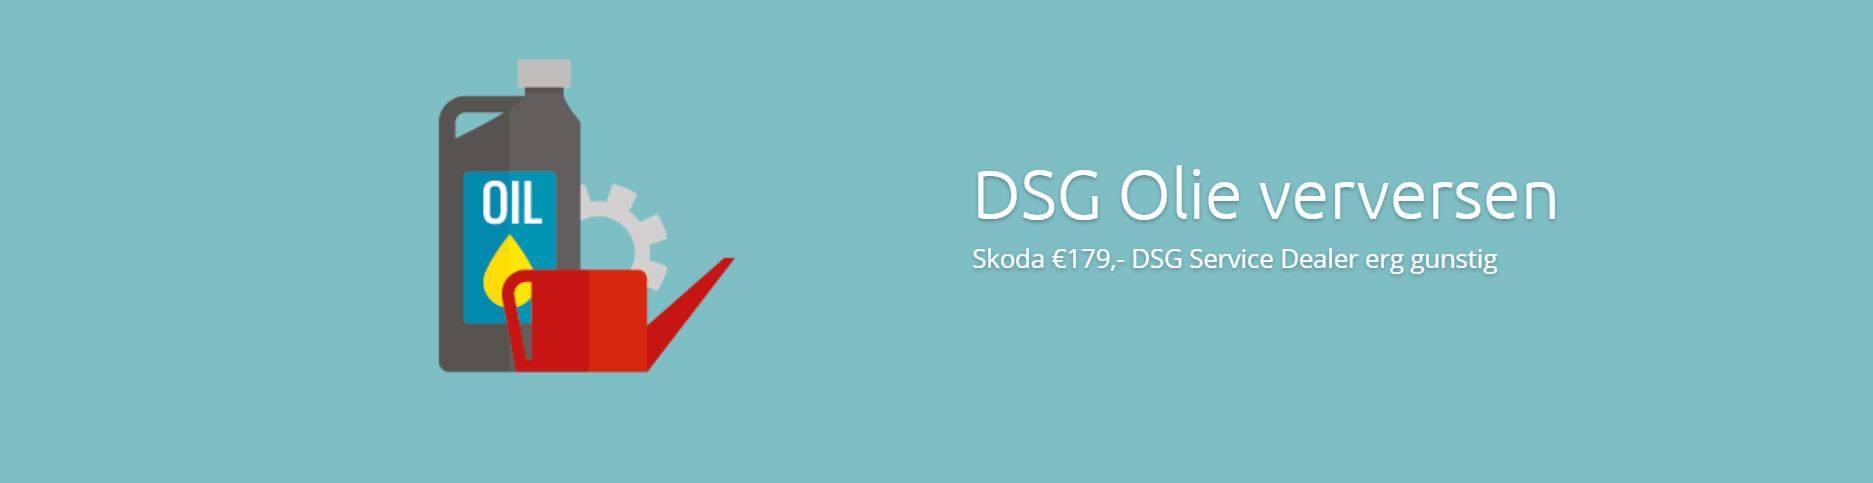 Skoda DSG Olie Verversen €179 DSG Skoda Olie Vervangen bij schakel klachten DSG oliewissel Skoda is bij DSG Service Dealer erg gunstig €179